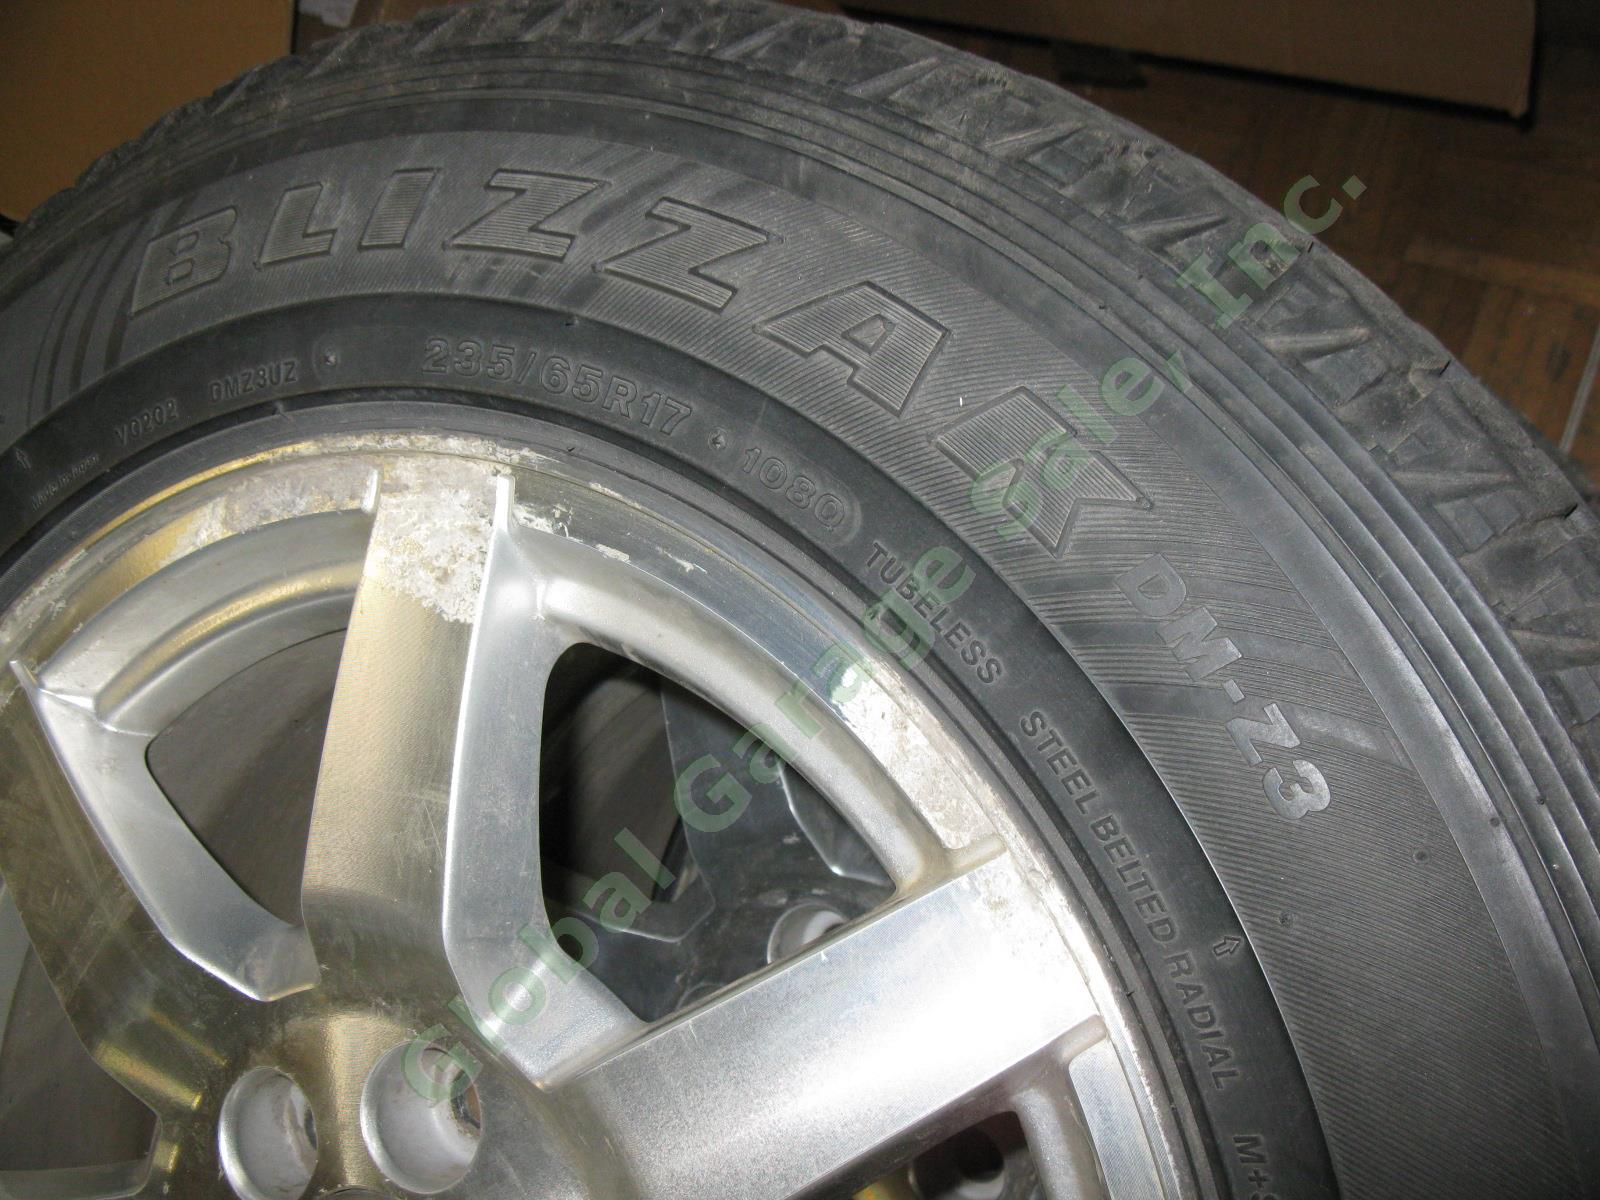 4 17"x 7.5" Rims Wheels + Bridgestone Blizzak 235/65/R17 Snow Tires Cadillac SRX 6